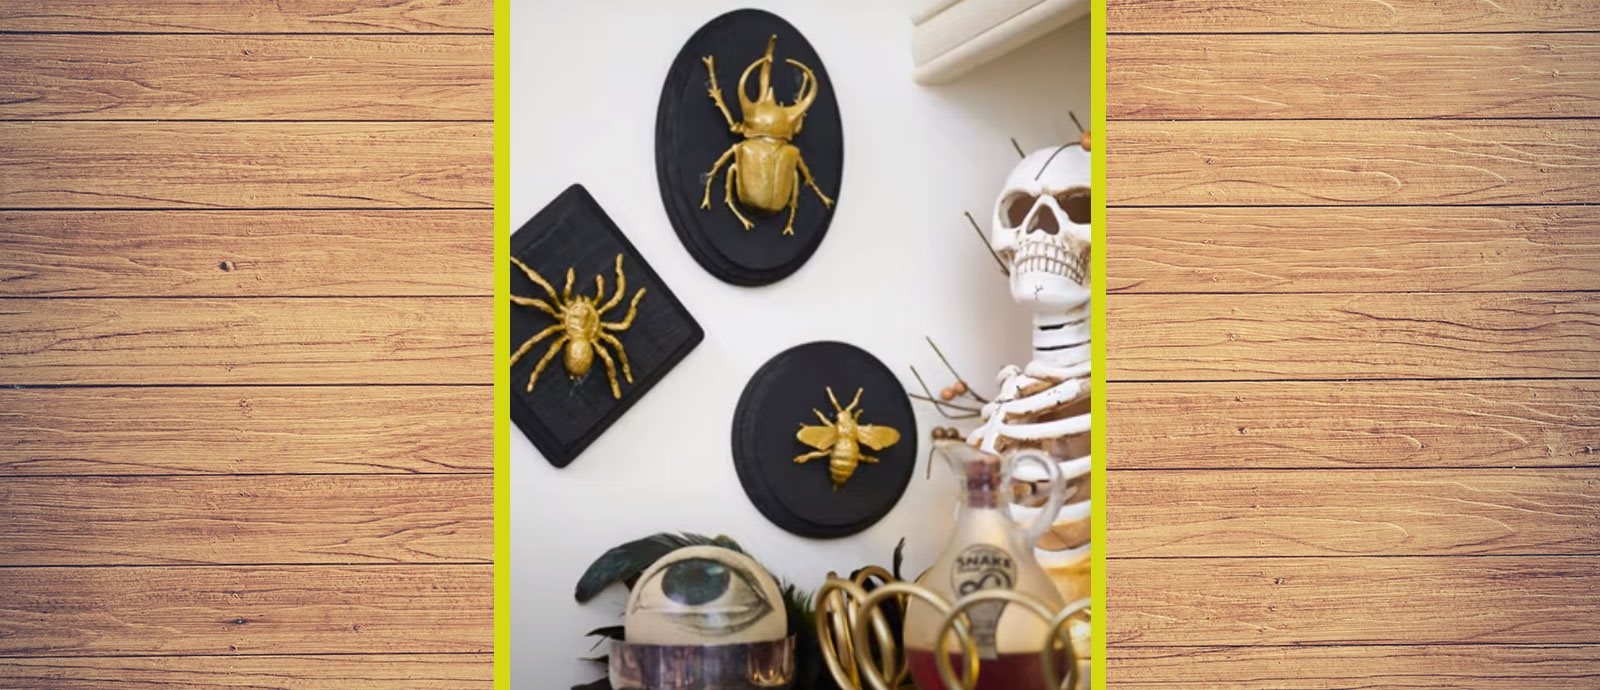 DIY : construire une décoration murale d'insectes pour Halloween